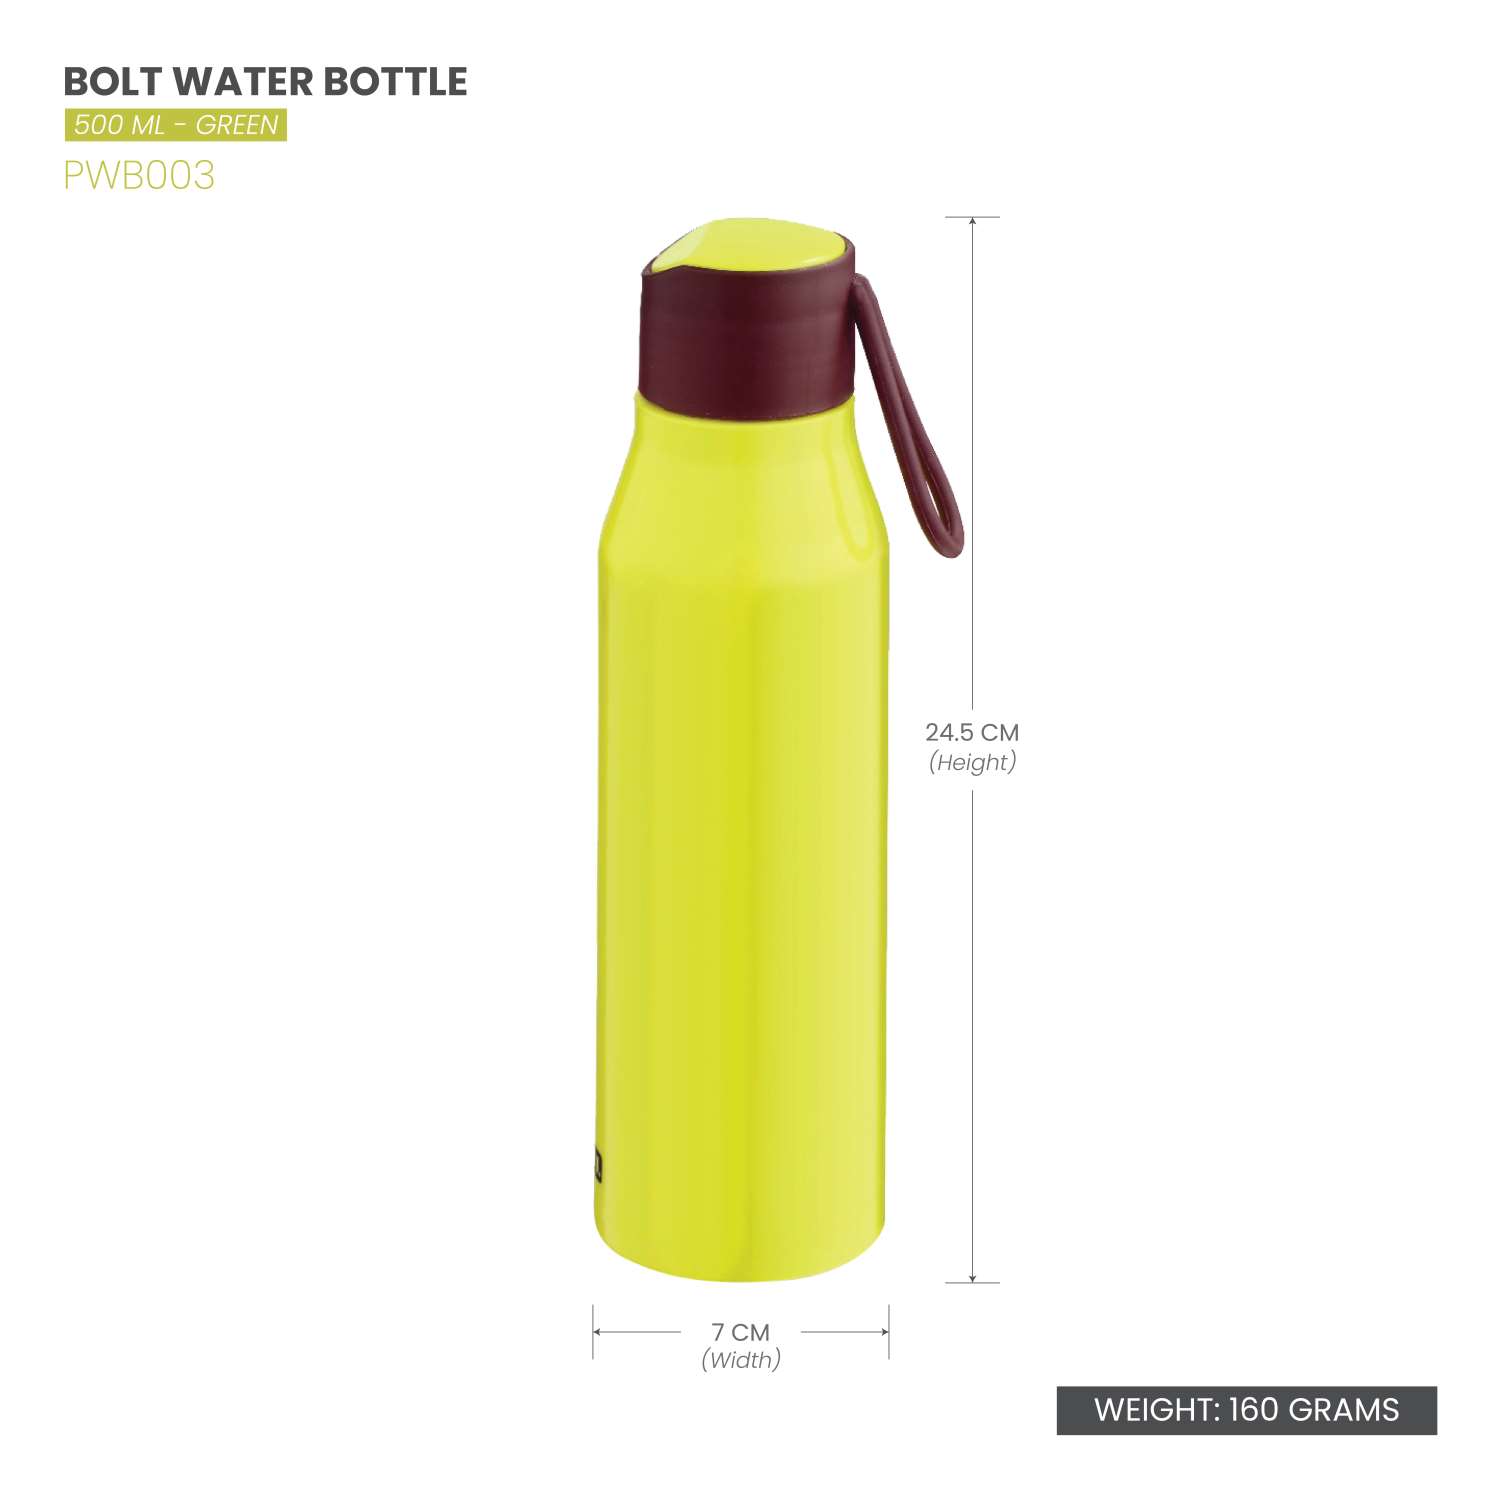 Selvel Bolt Plastic Water Bottle Green 500Ml